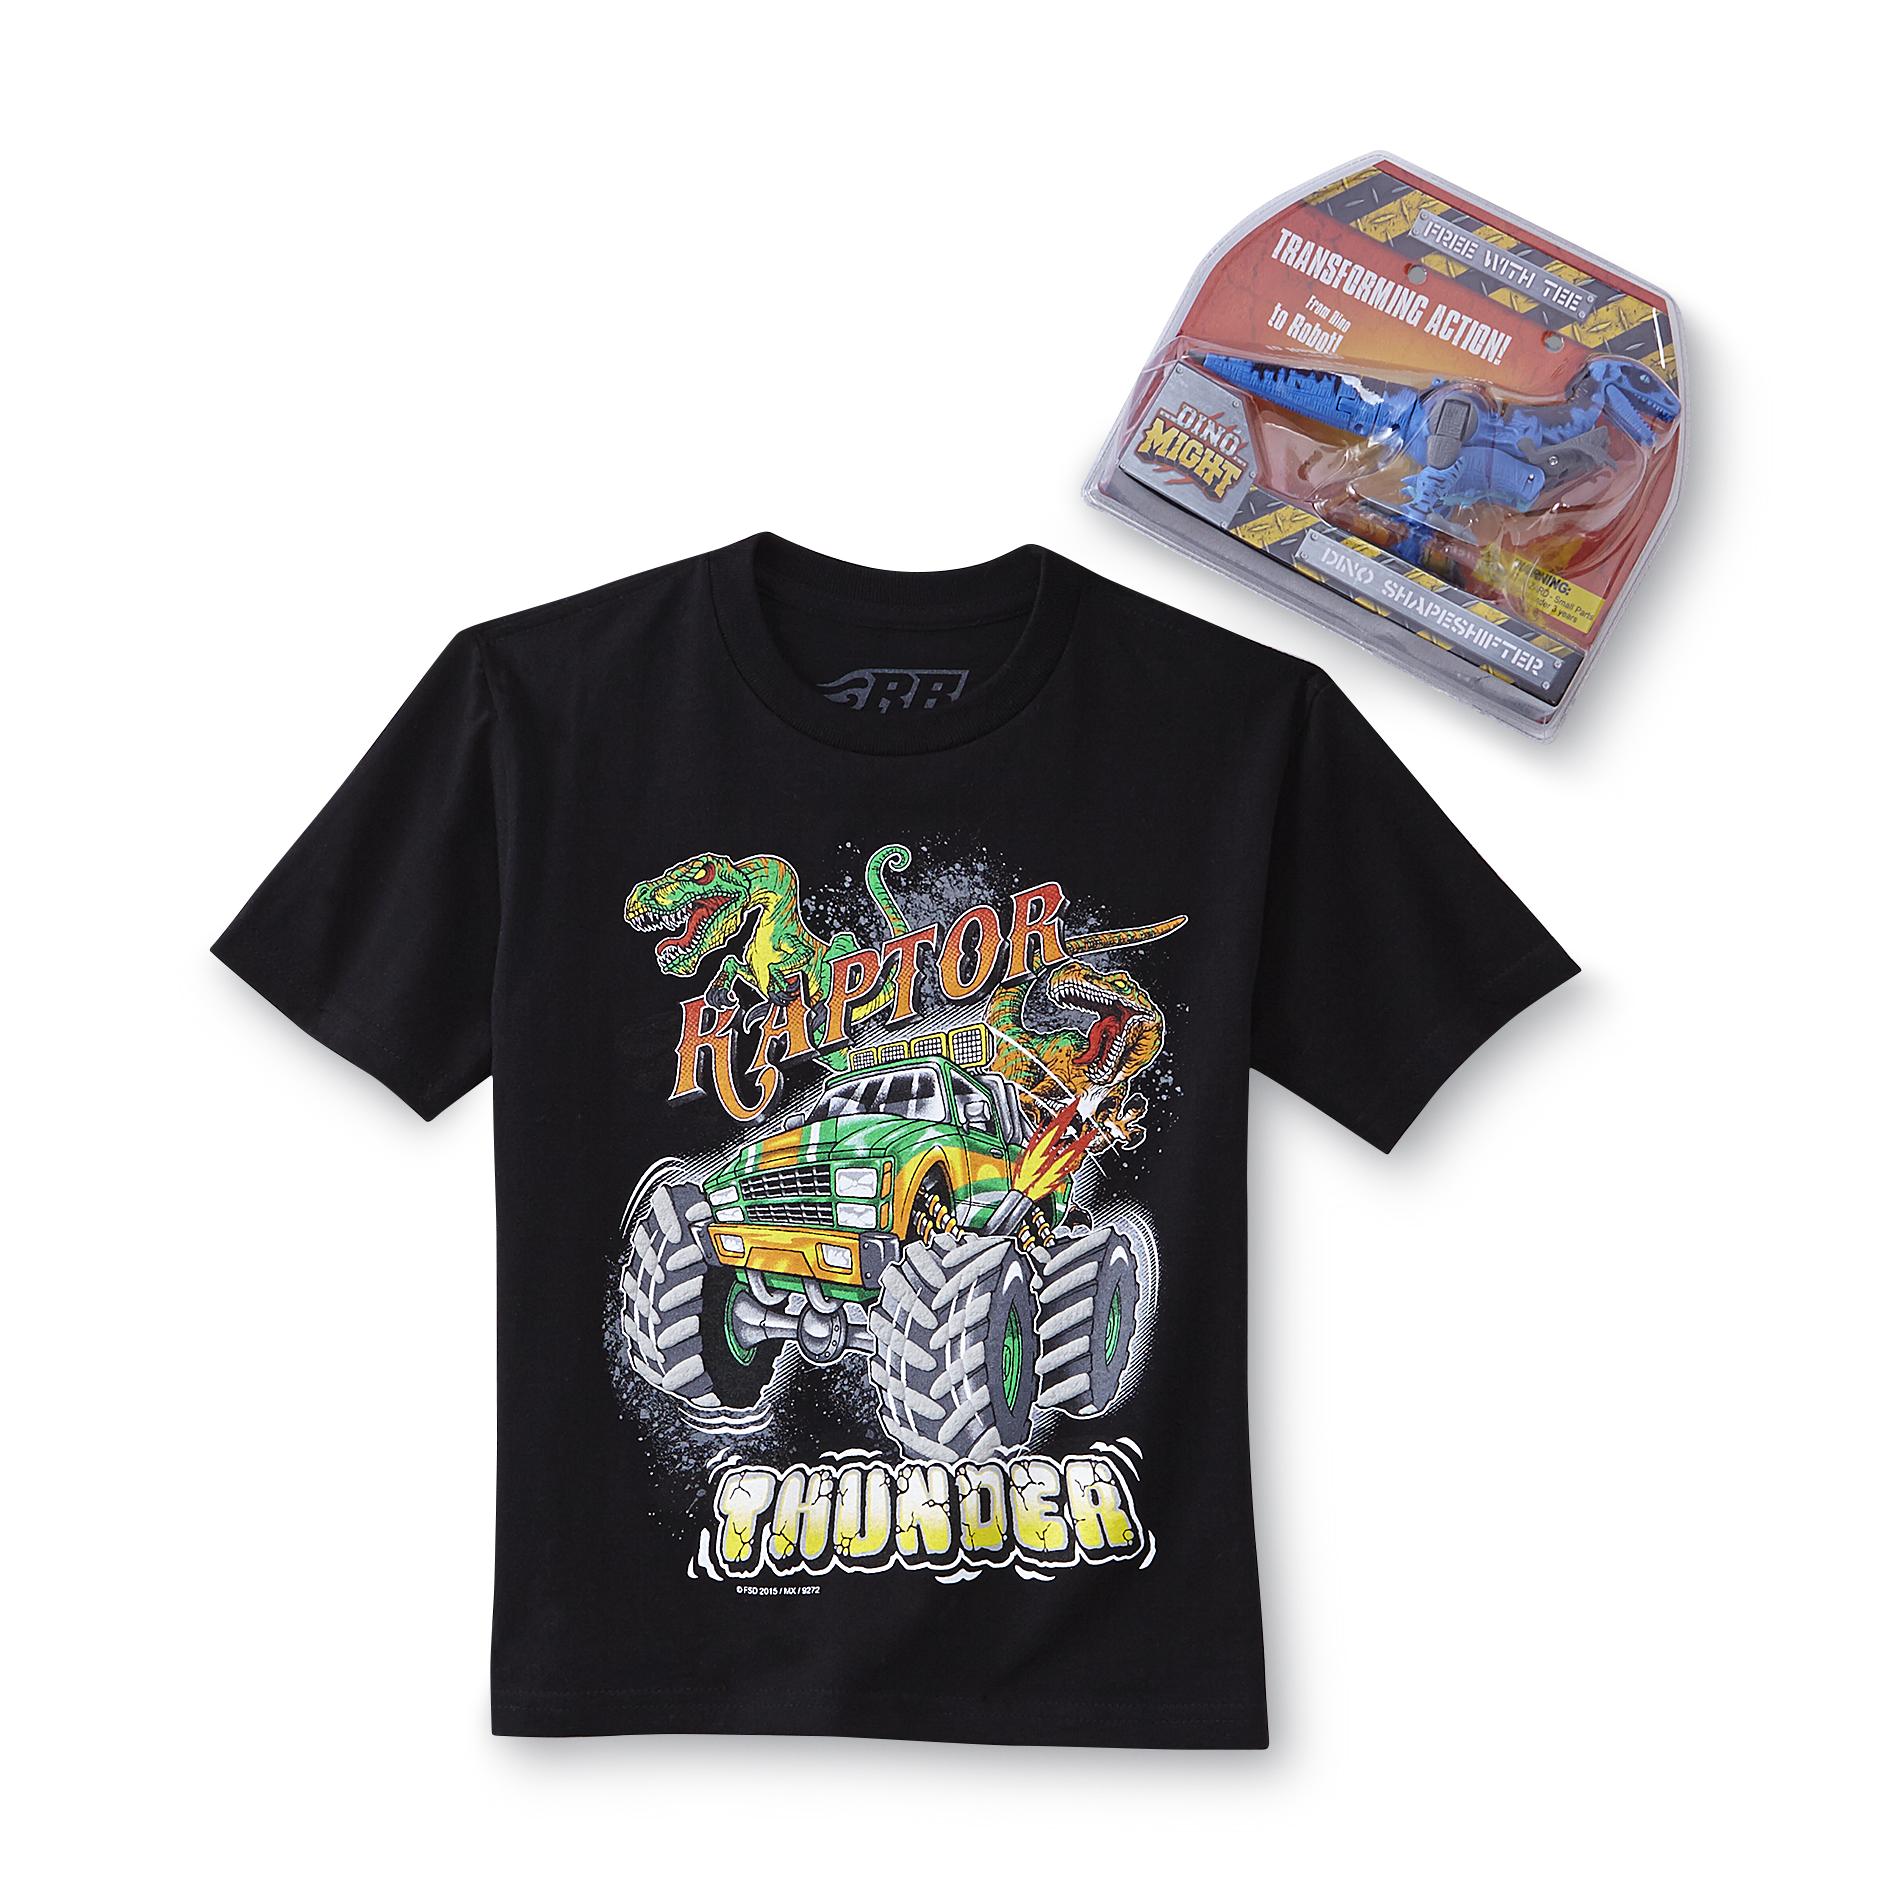 Rudeboyz Boy's T-Shirt & Toy